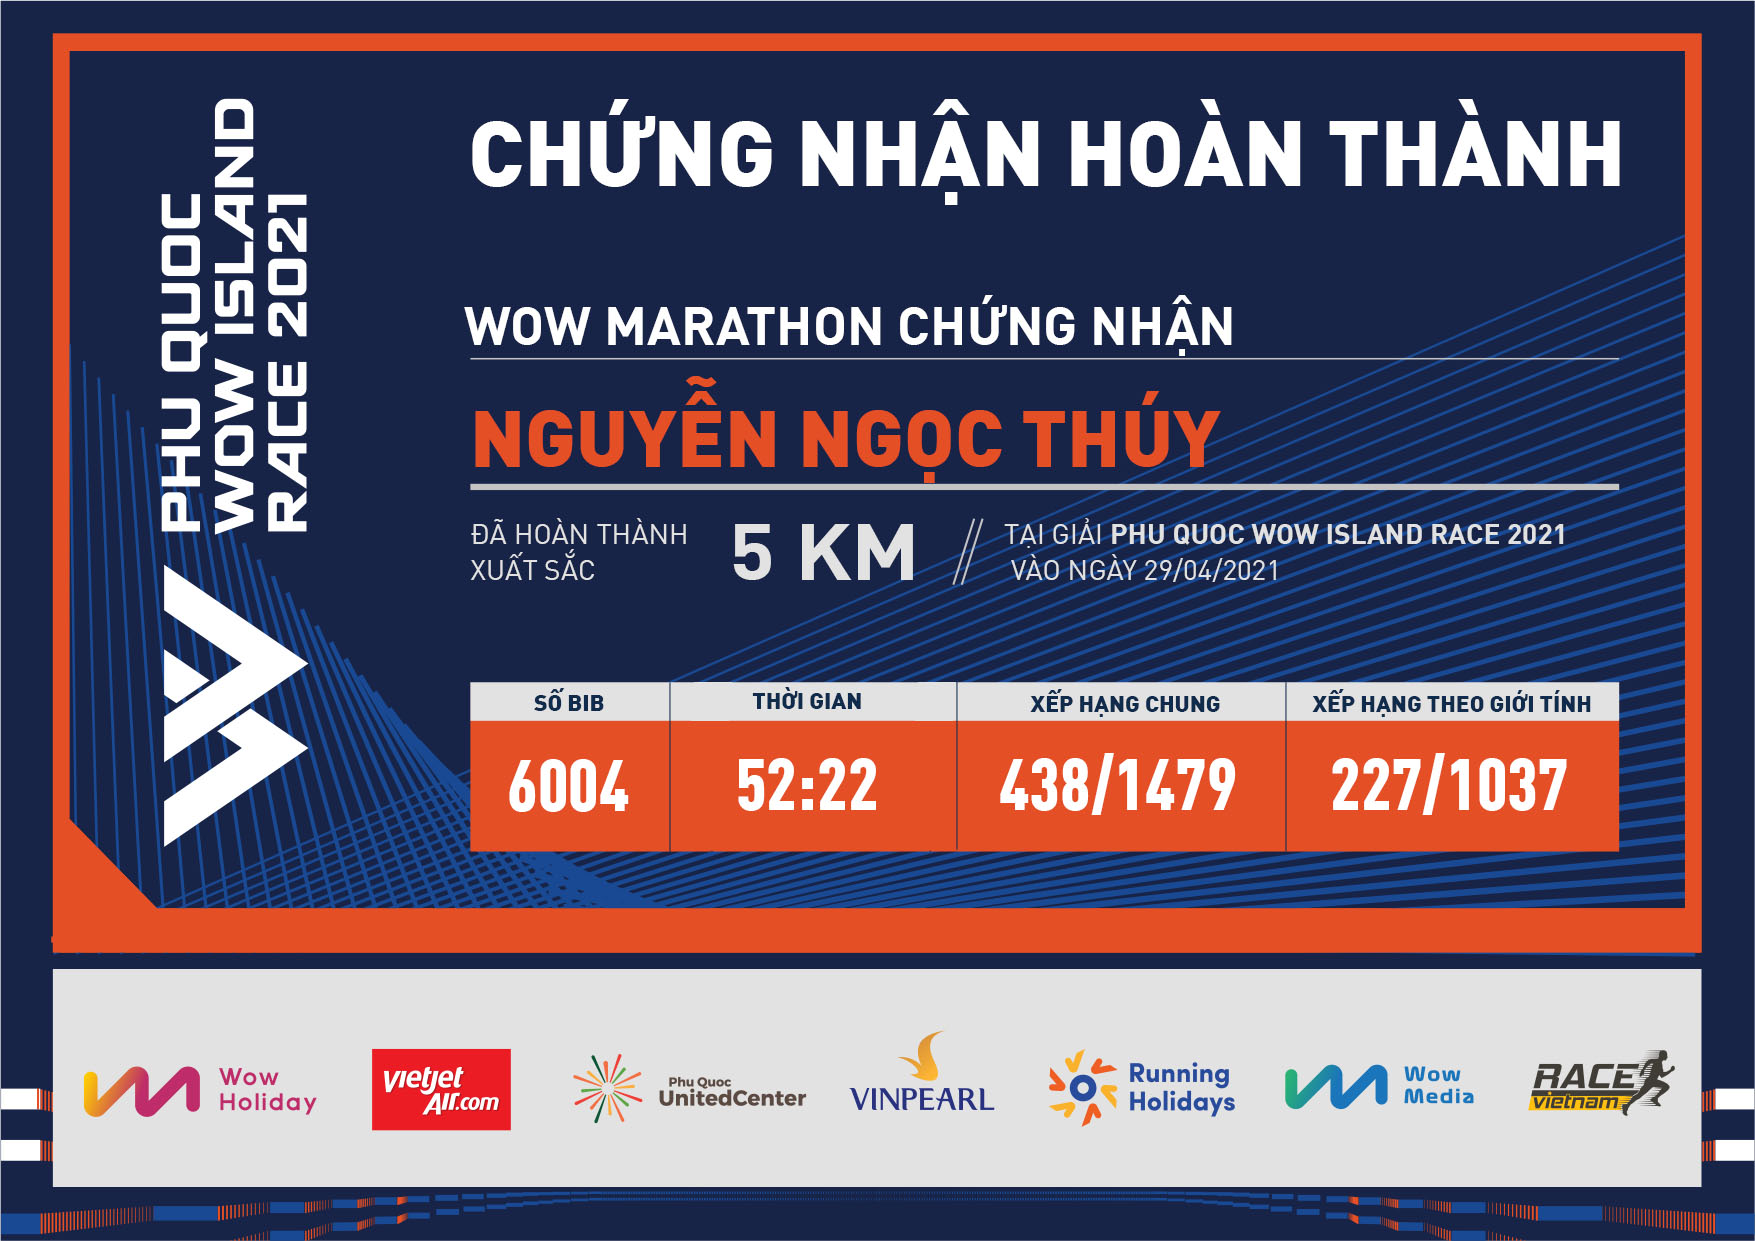 6004 - Nguyễn Ngọc Thúy